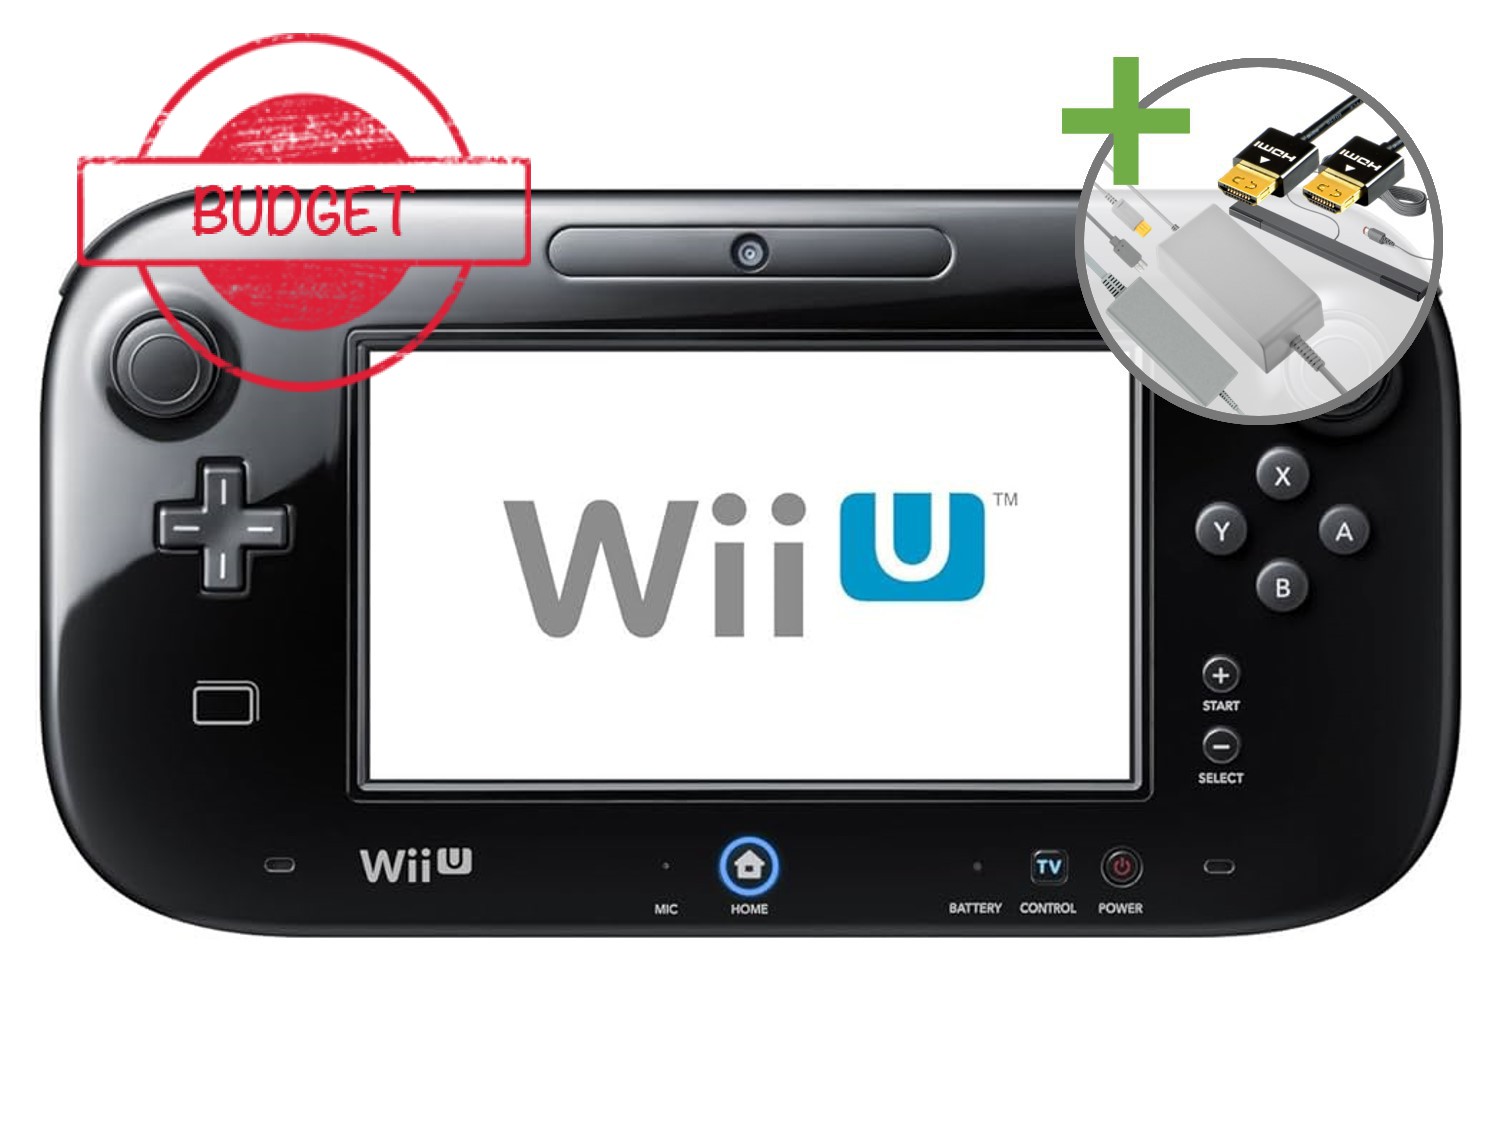 Nintendo Wii U Starter Pack - Basic Black Pack Edition - Budget - Wii U Hardware - 2